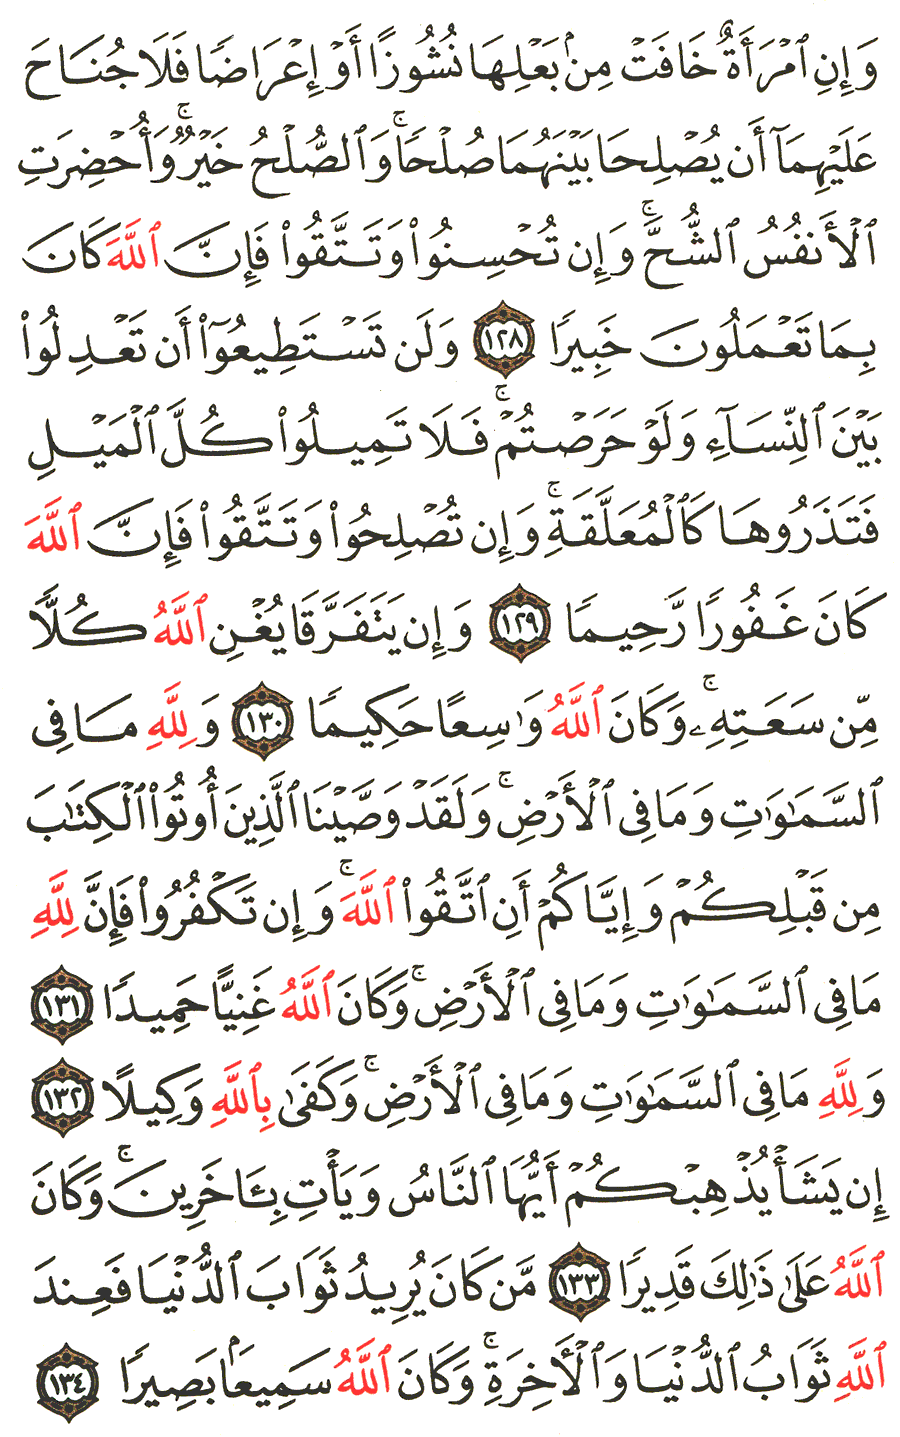 الصفحة 99 من القرآن الكريم